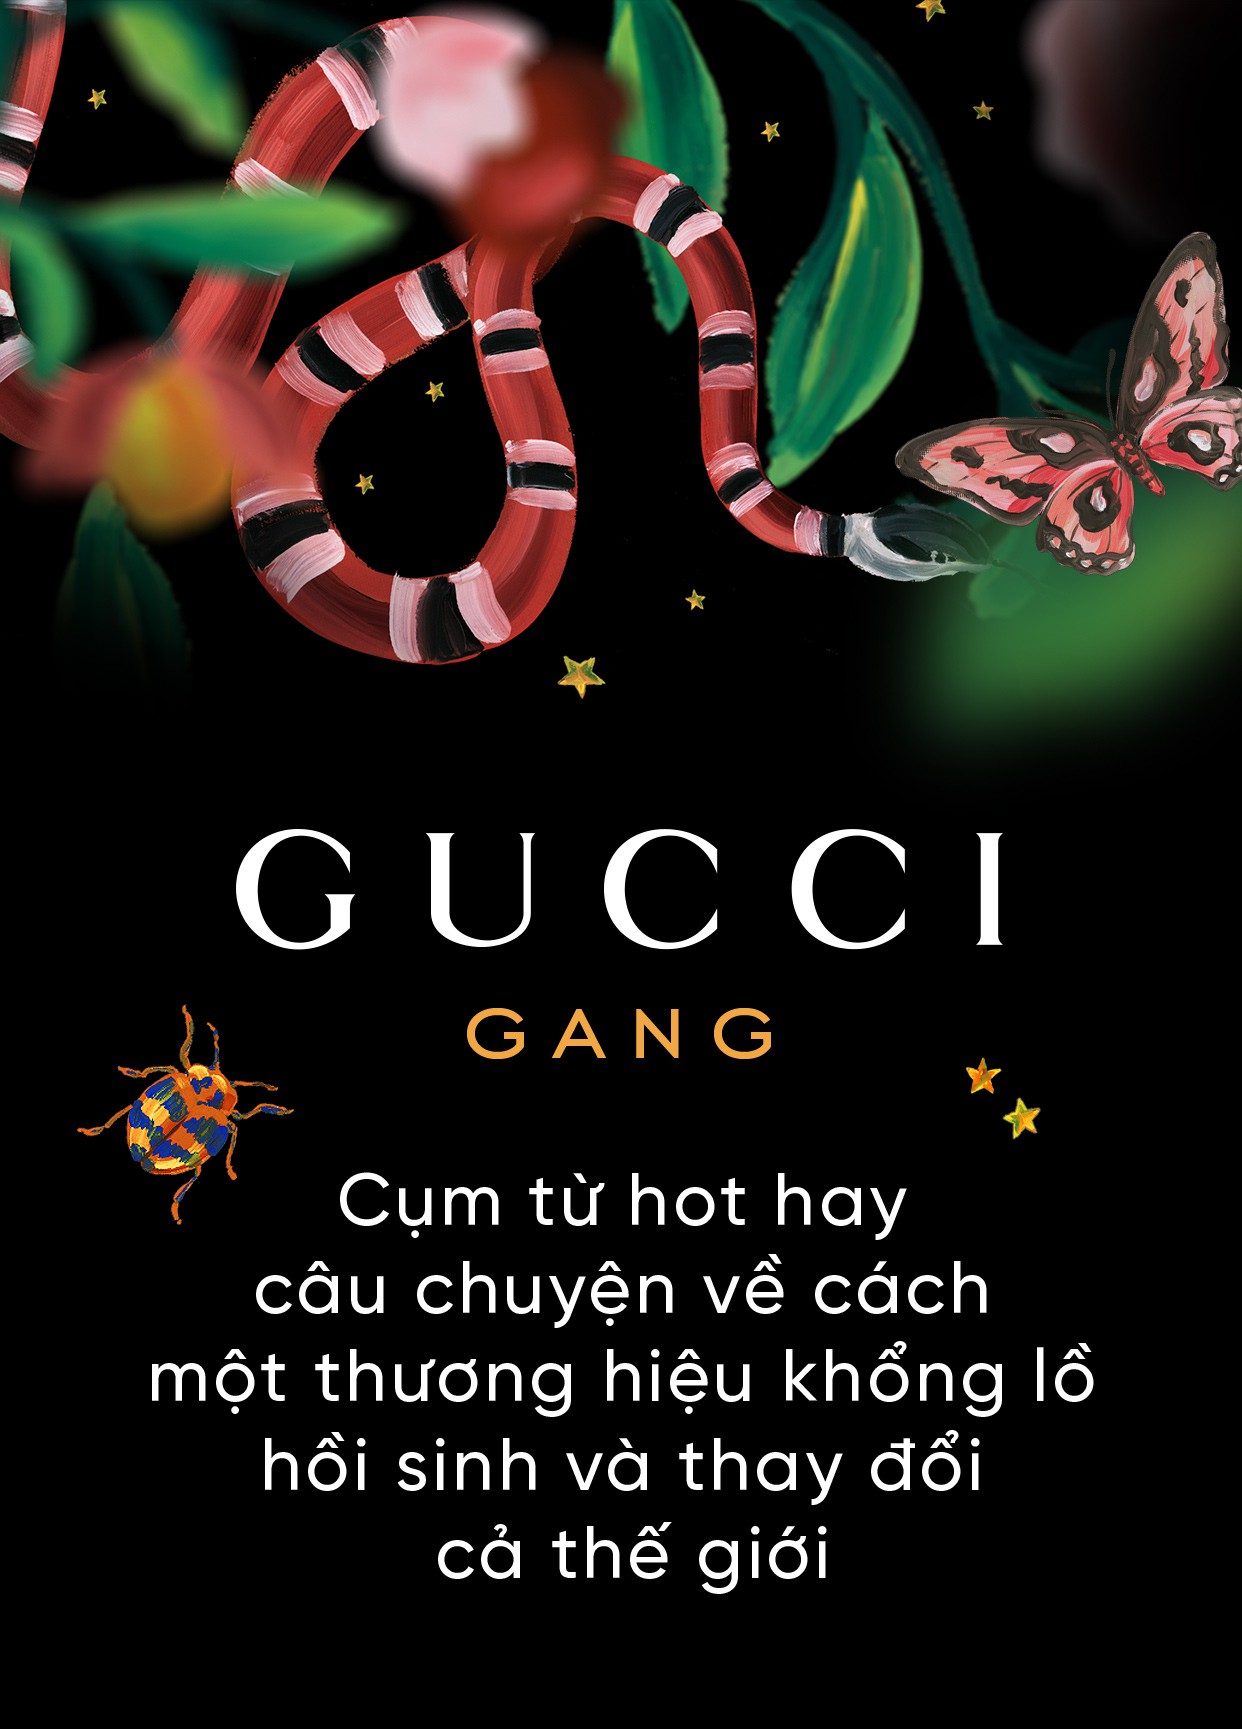 Gucci Gang là gì?
